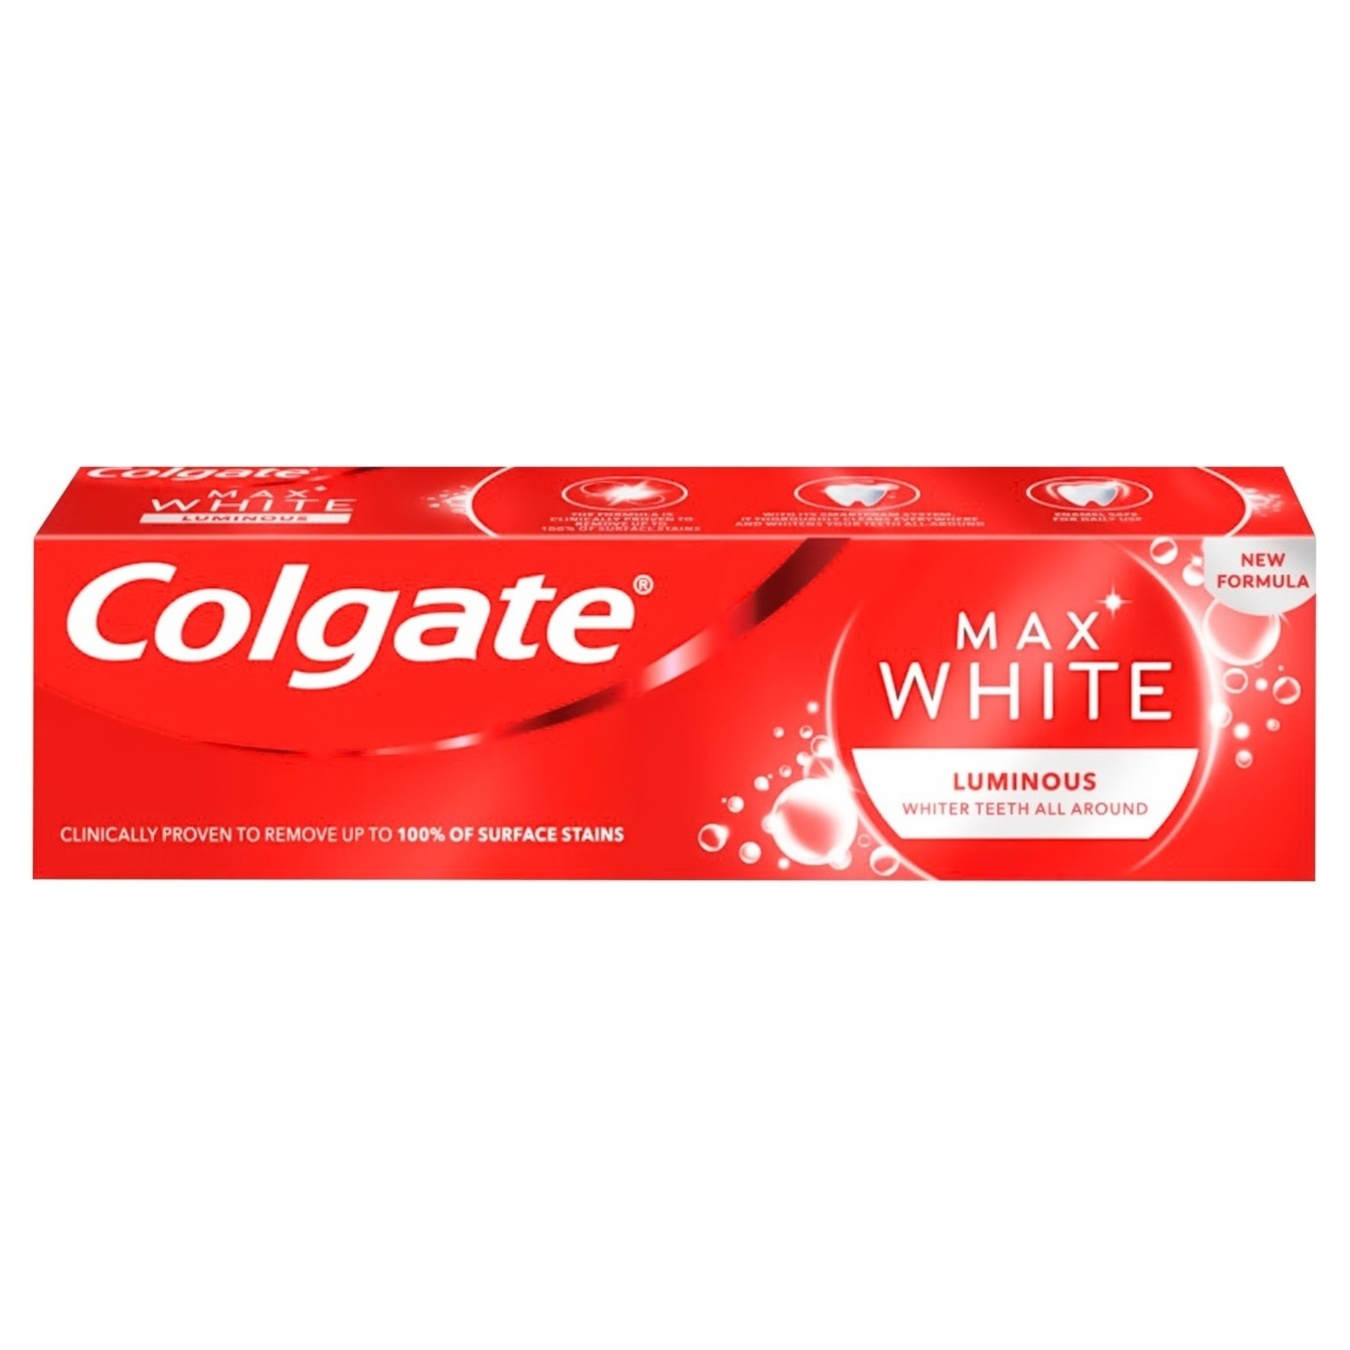 Colgate Max White Luminous (Optic white) whitening toothpaste 75ml